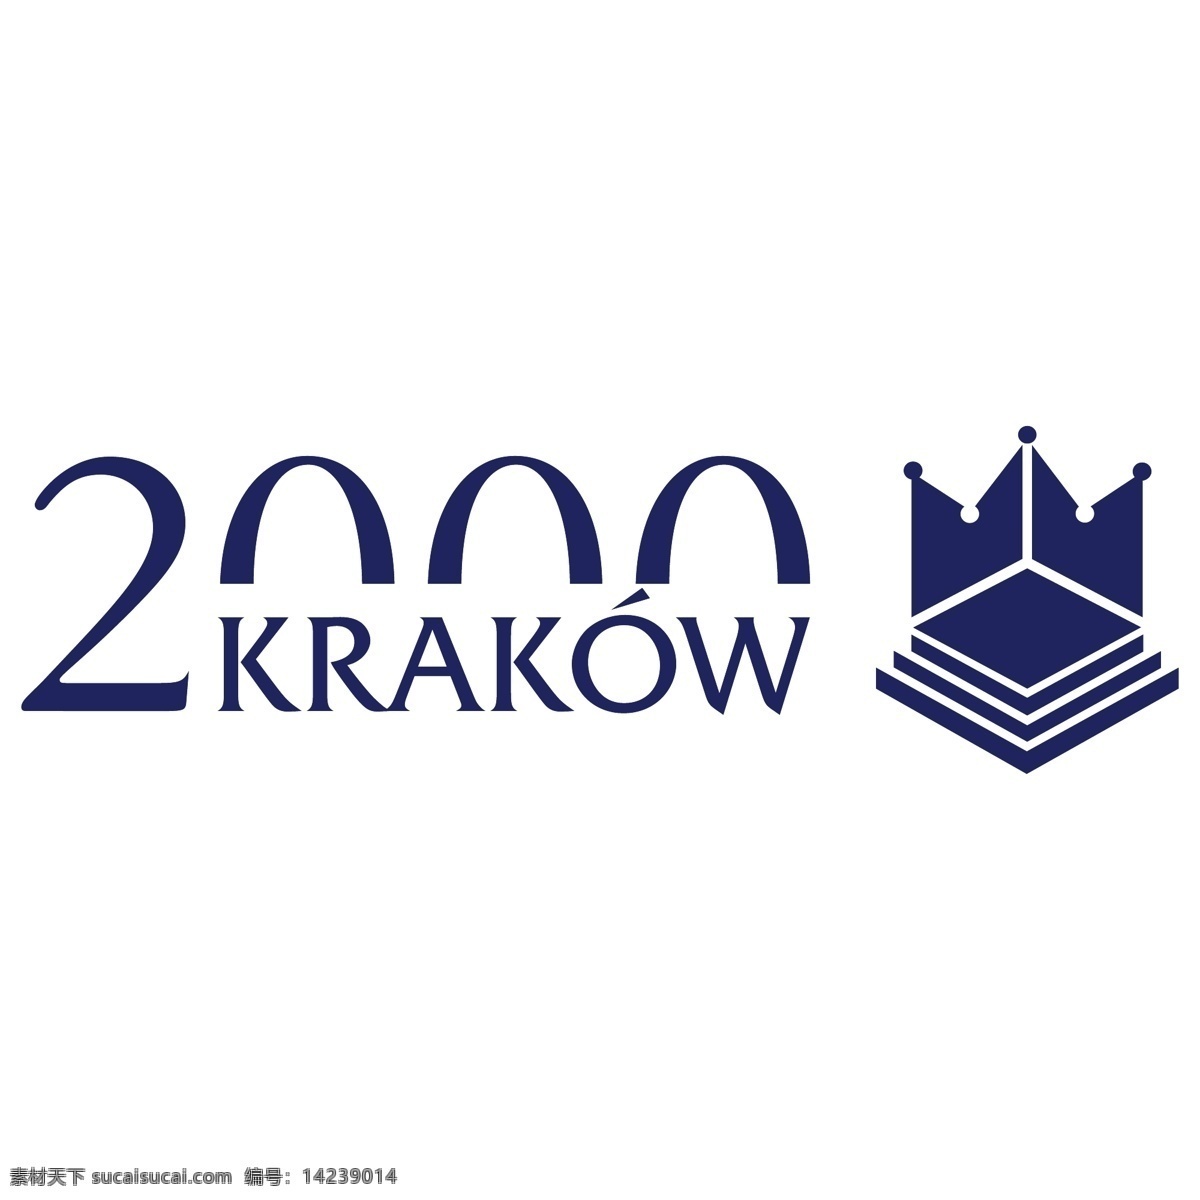 自由 克拉科夫 2000 标志 标识 白色